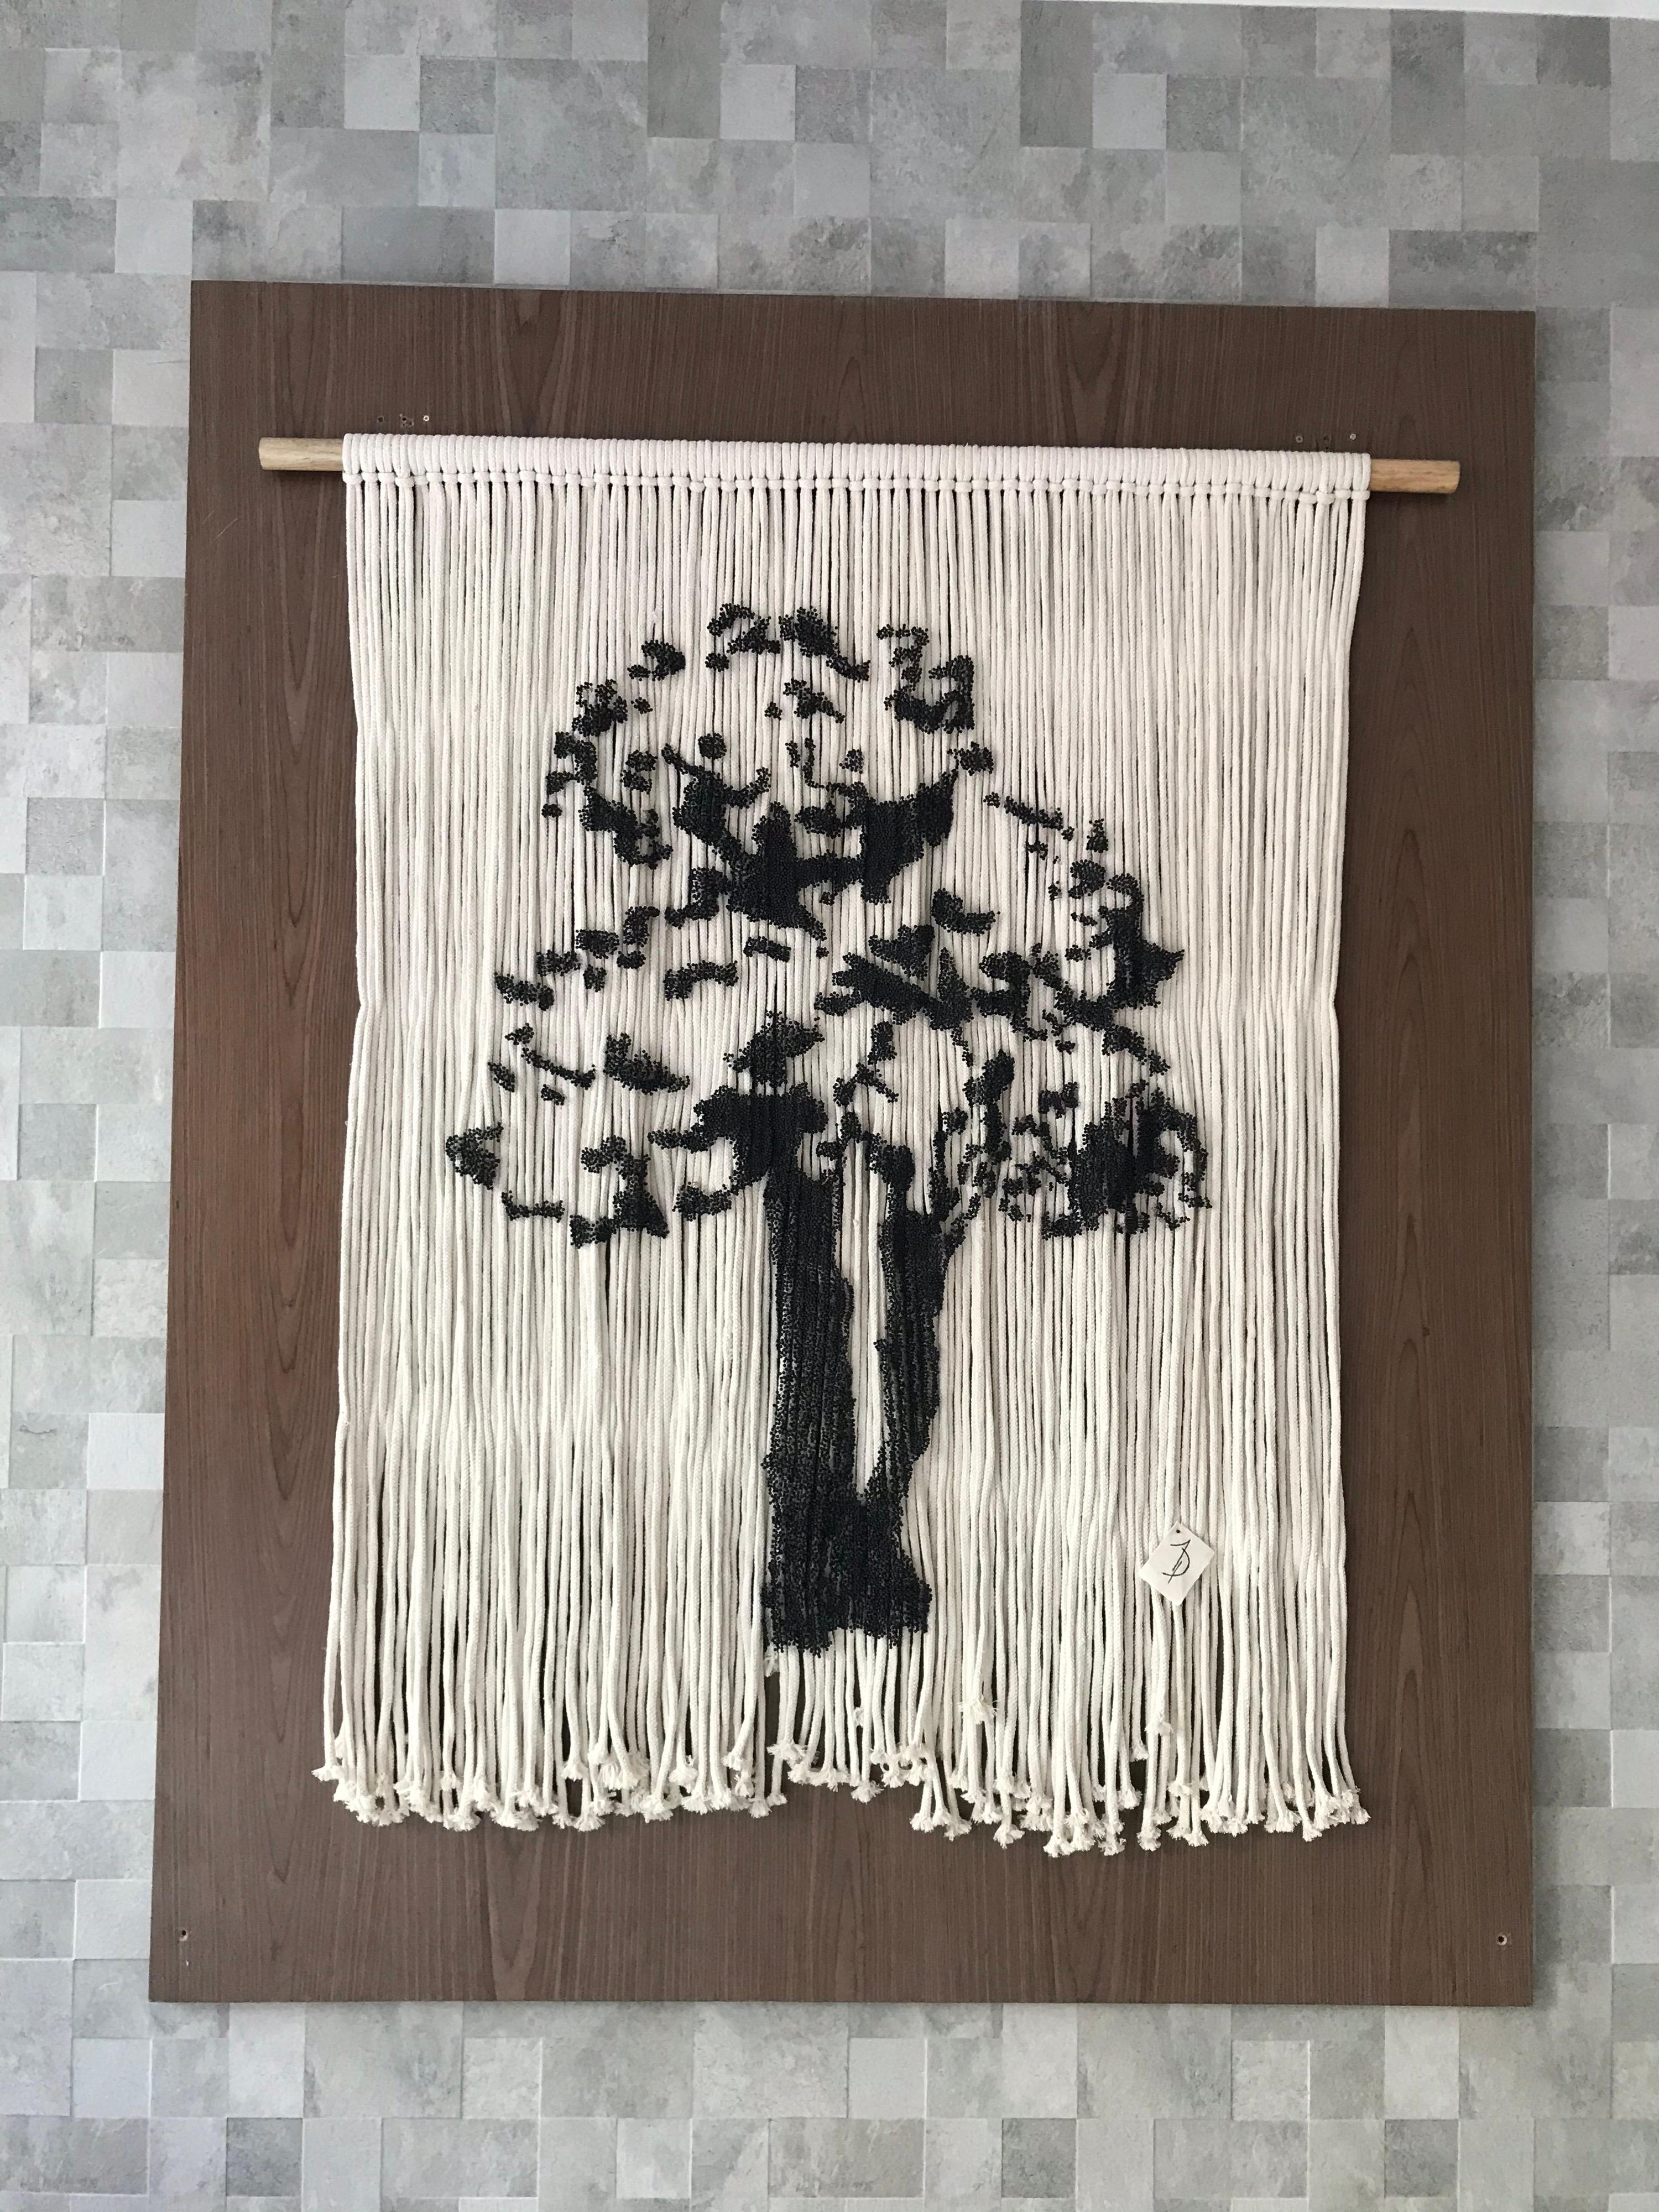 Élégant arbre suspendu fait à la main avec des épingles - Art de Arozarena De La Fuente